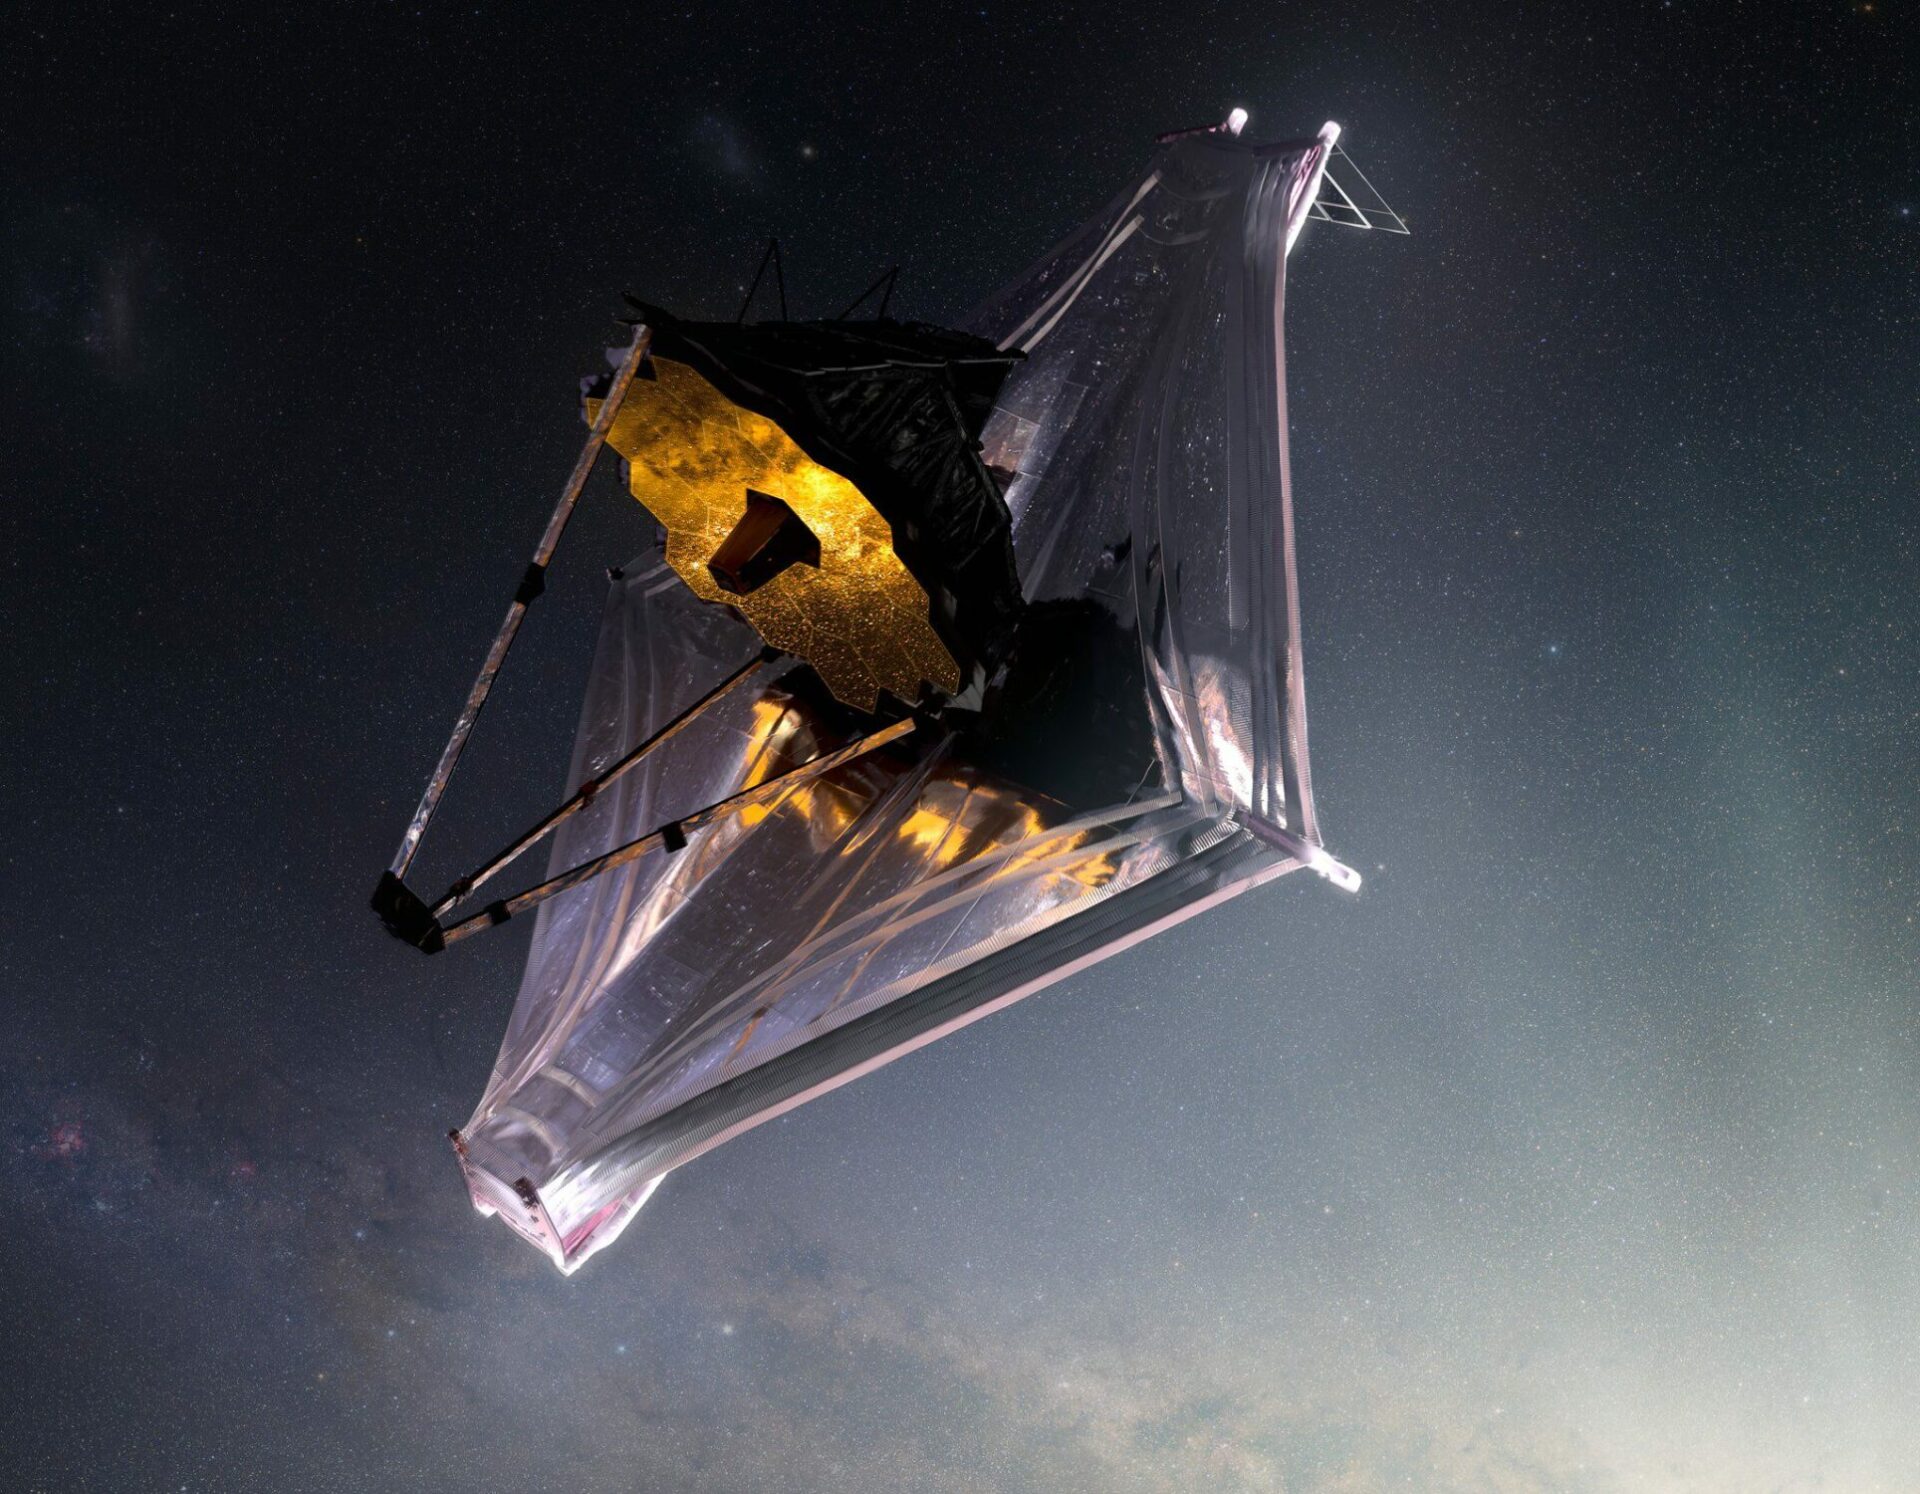 NASA’s Webb Space Telescope